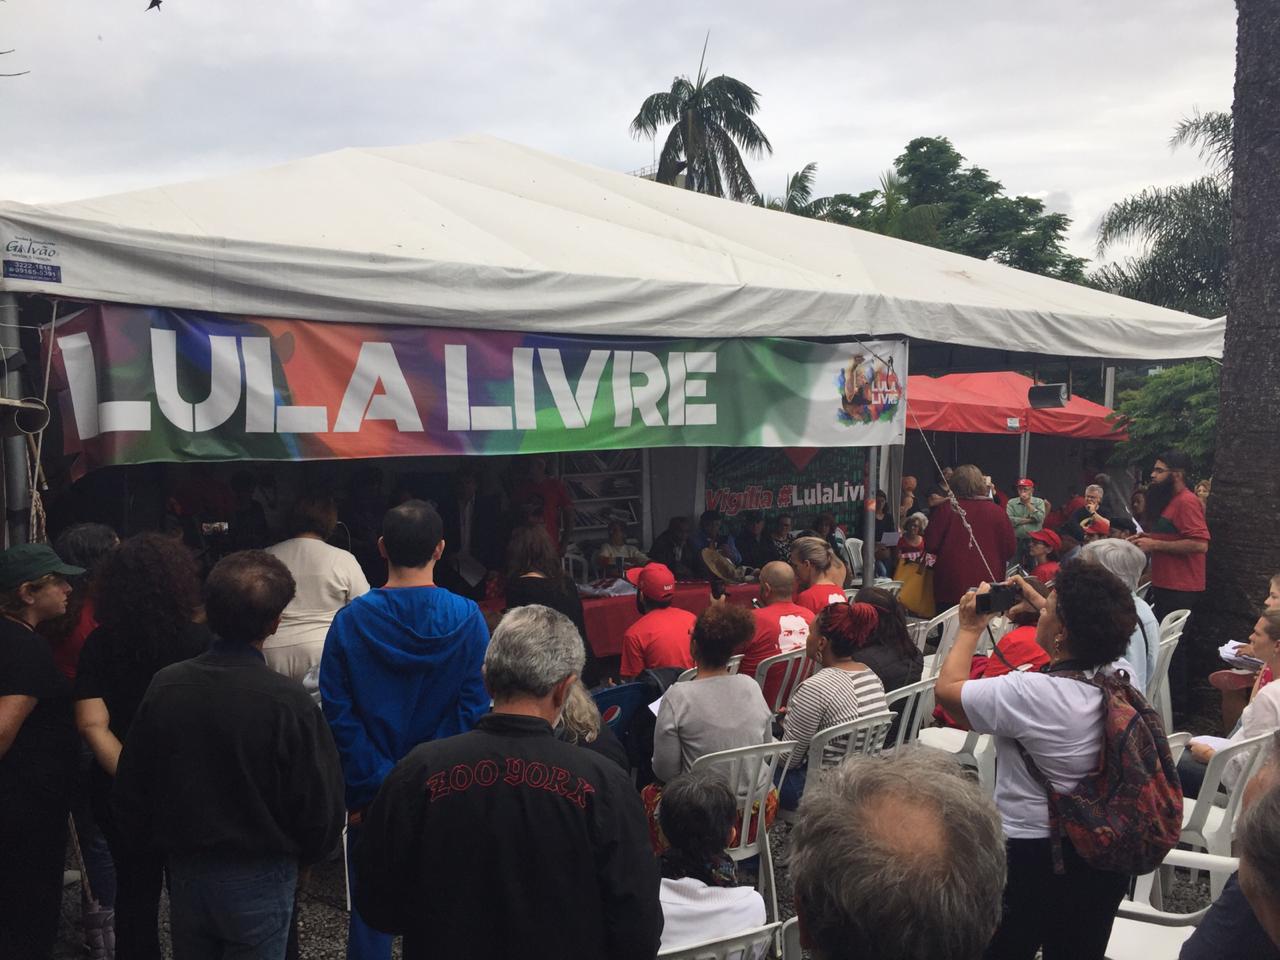  Após 580 dias de acampamento, futuro da vigília Lula Livre ainda é incerto